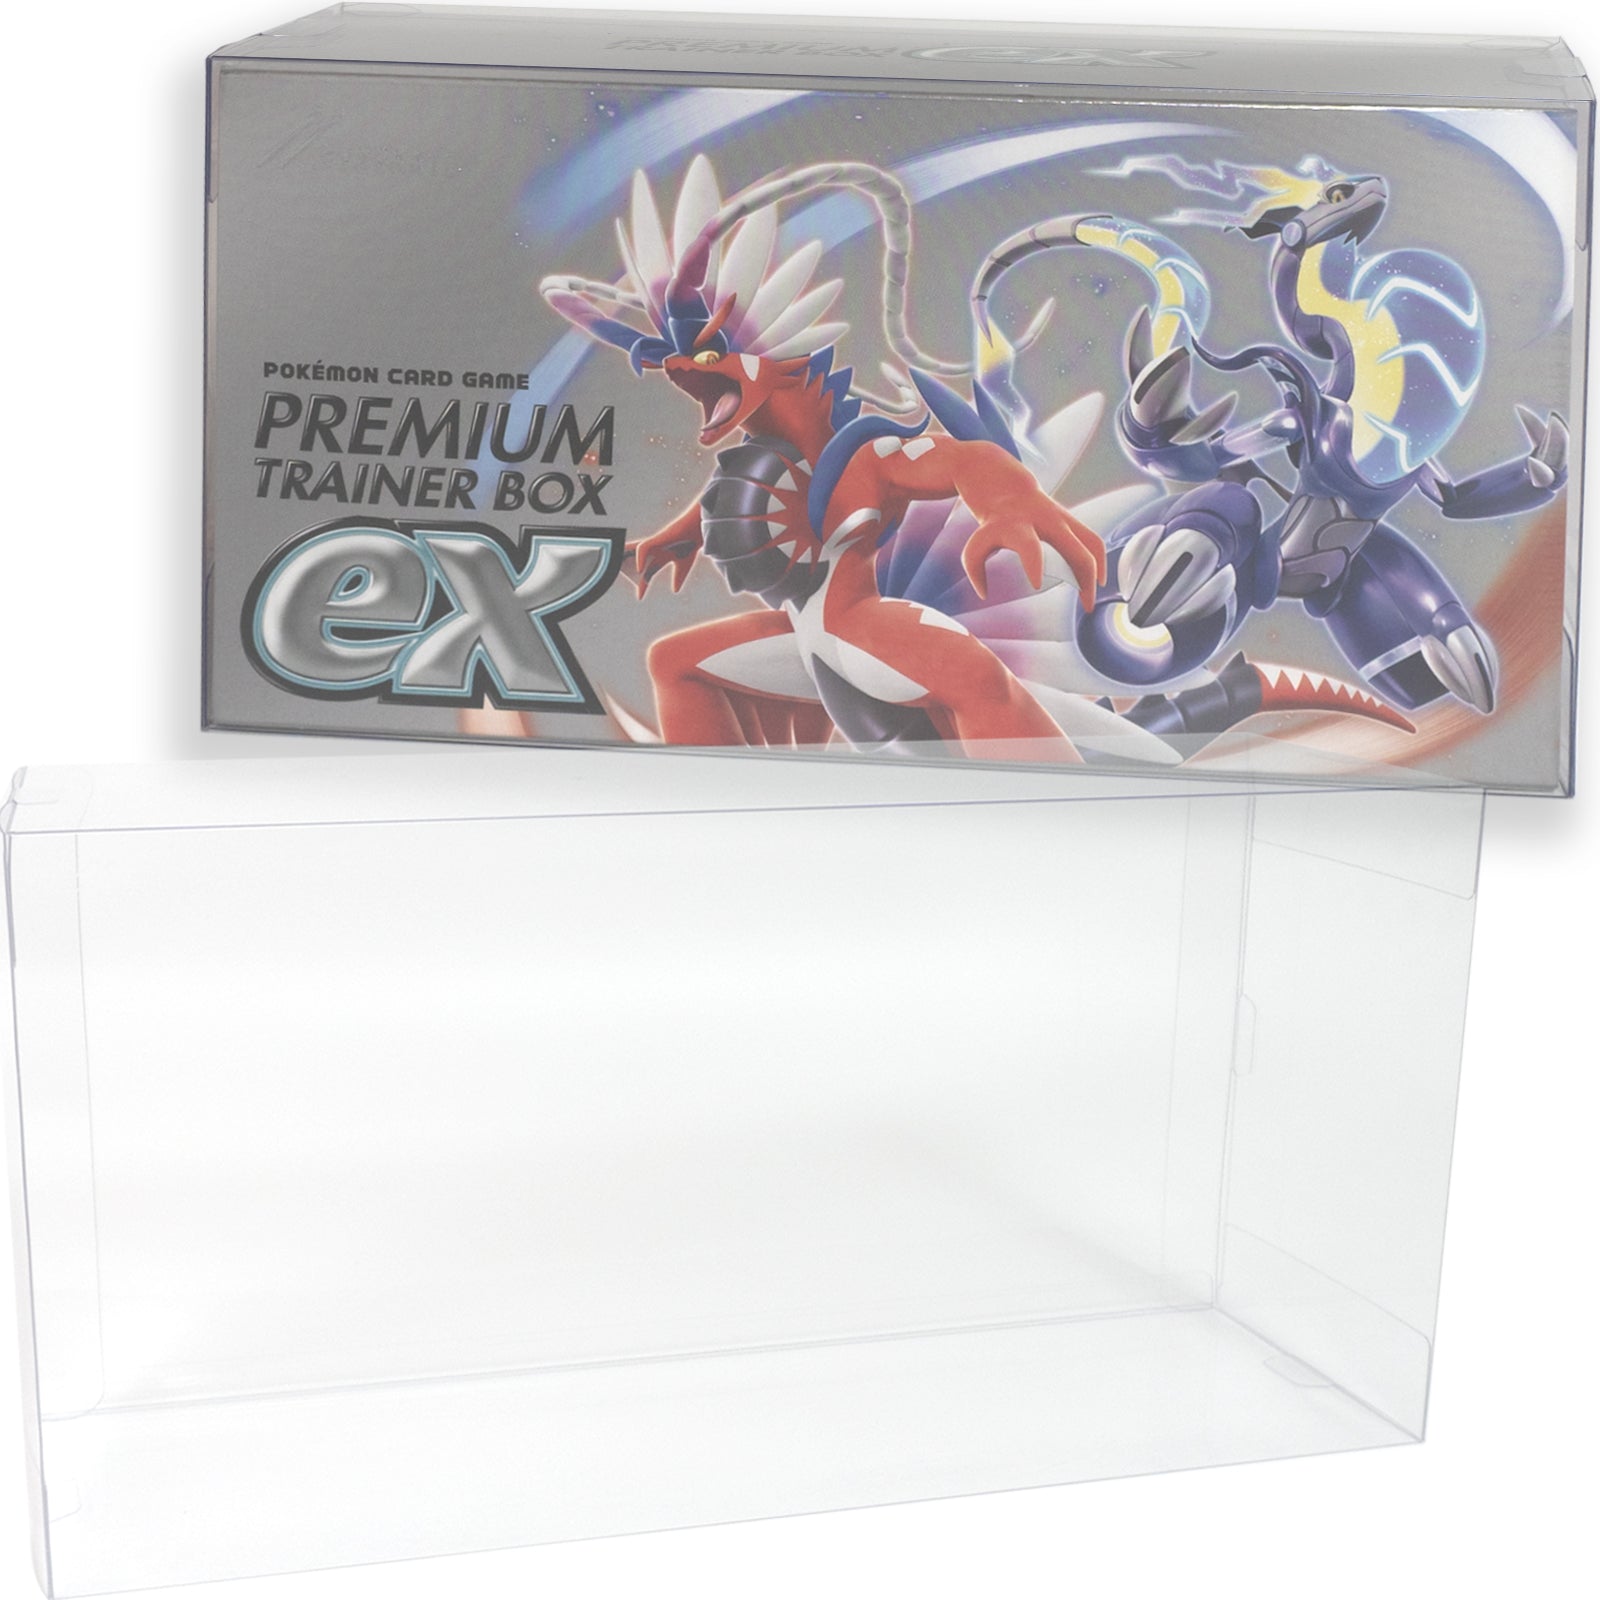 Boxx Guardian ポケモンカードBOX用 プレミアムトレーナーボックスex